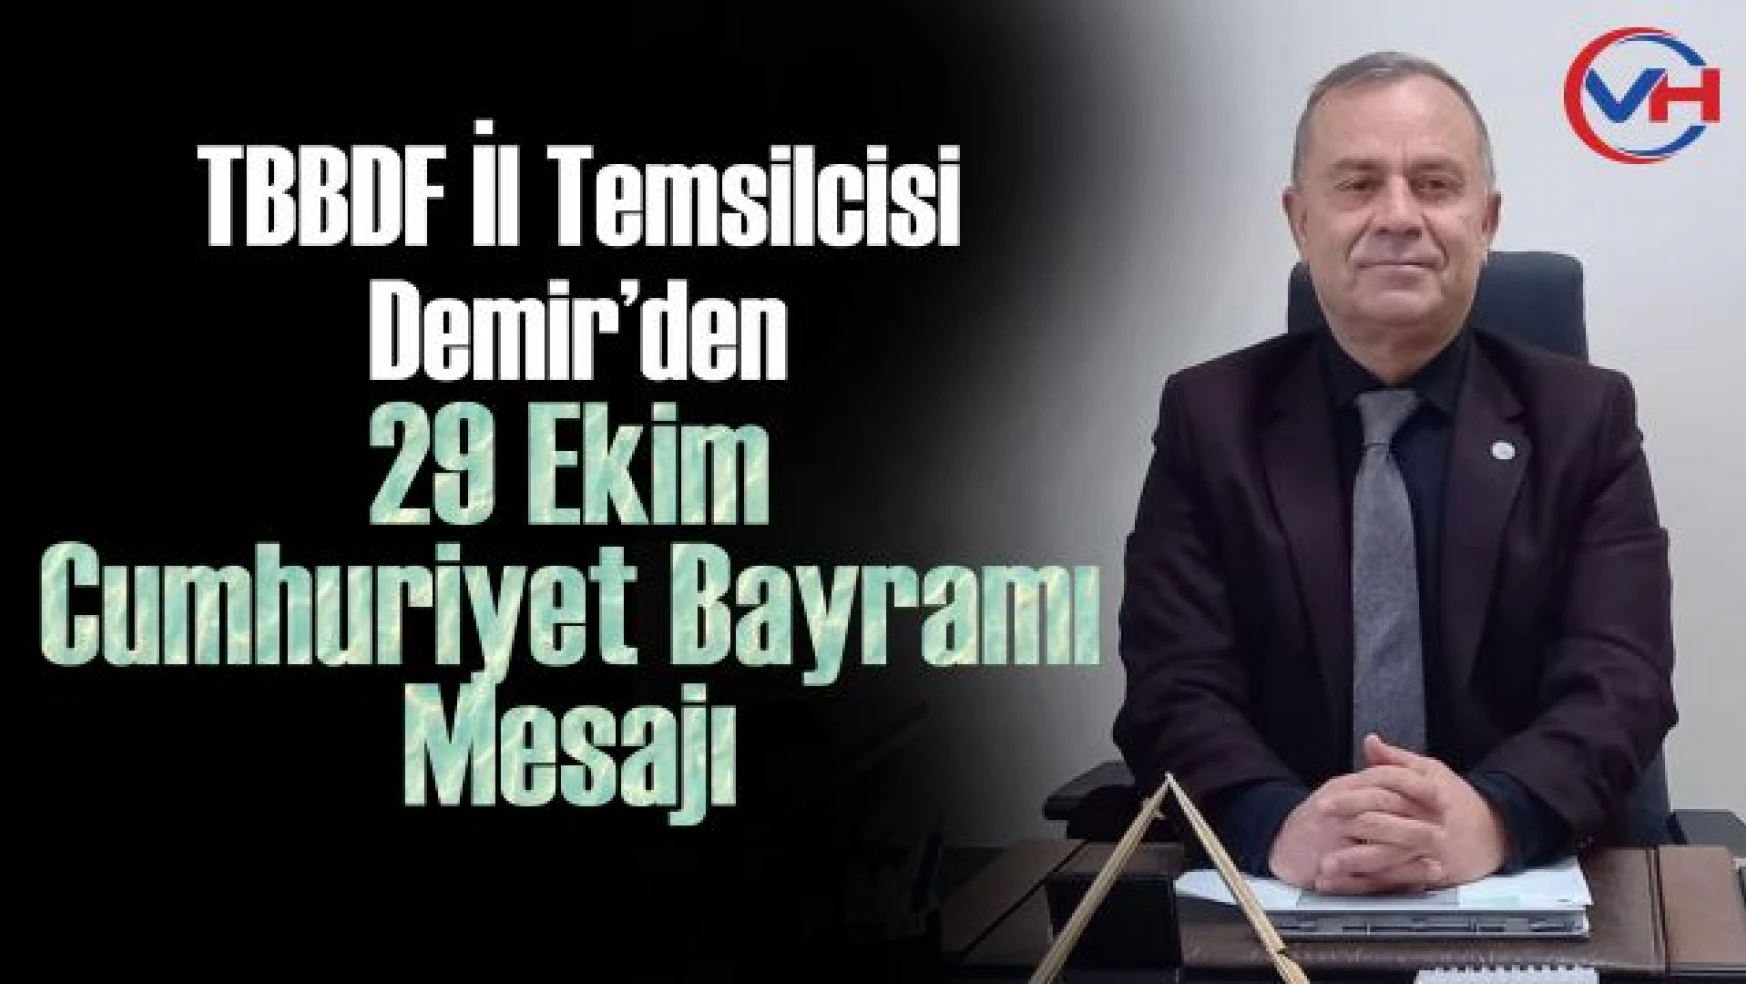 TBBDF Van İl Temsilcisi Demir'den 29 Ekim Cumhuriyet Bayramı Mesajı